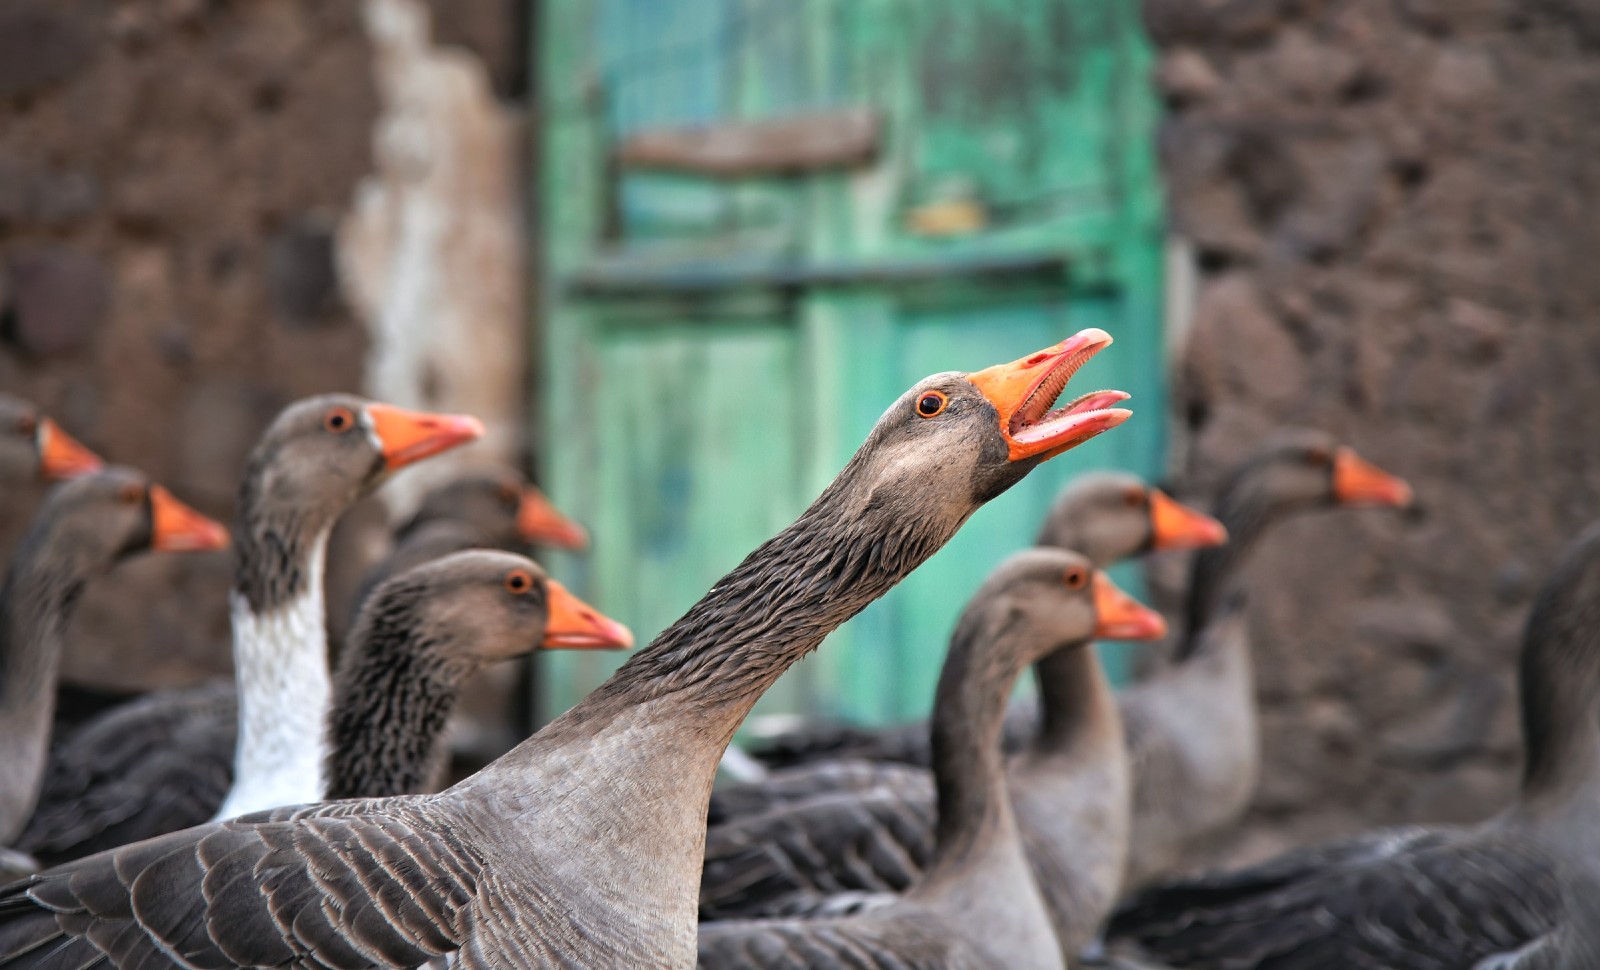 Plutôt que d’interdire le foie gras, mangeons-en moins mais mieux